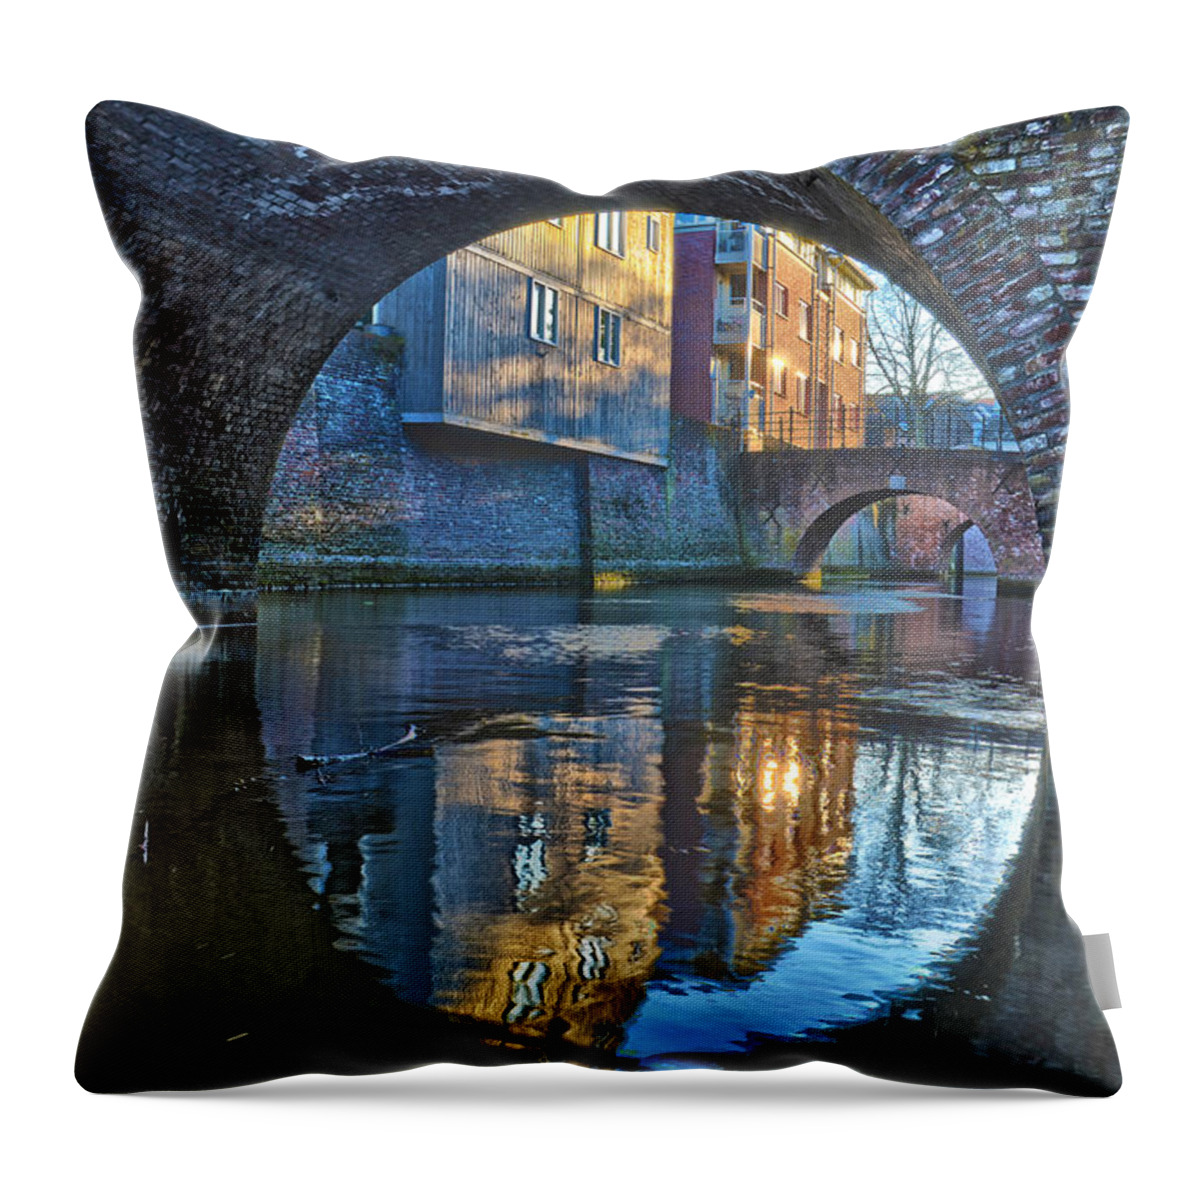 Bridge Throw Pillow featuring the photograph Bridges across Binnendieze in Den Bosch by Frans Blok